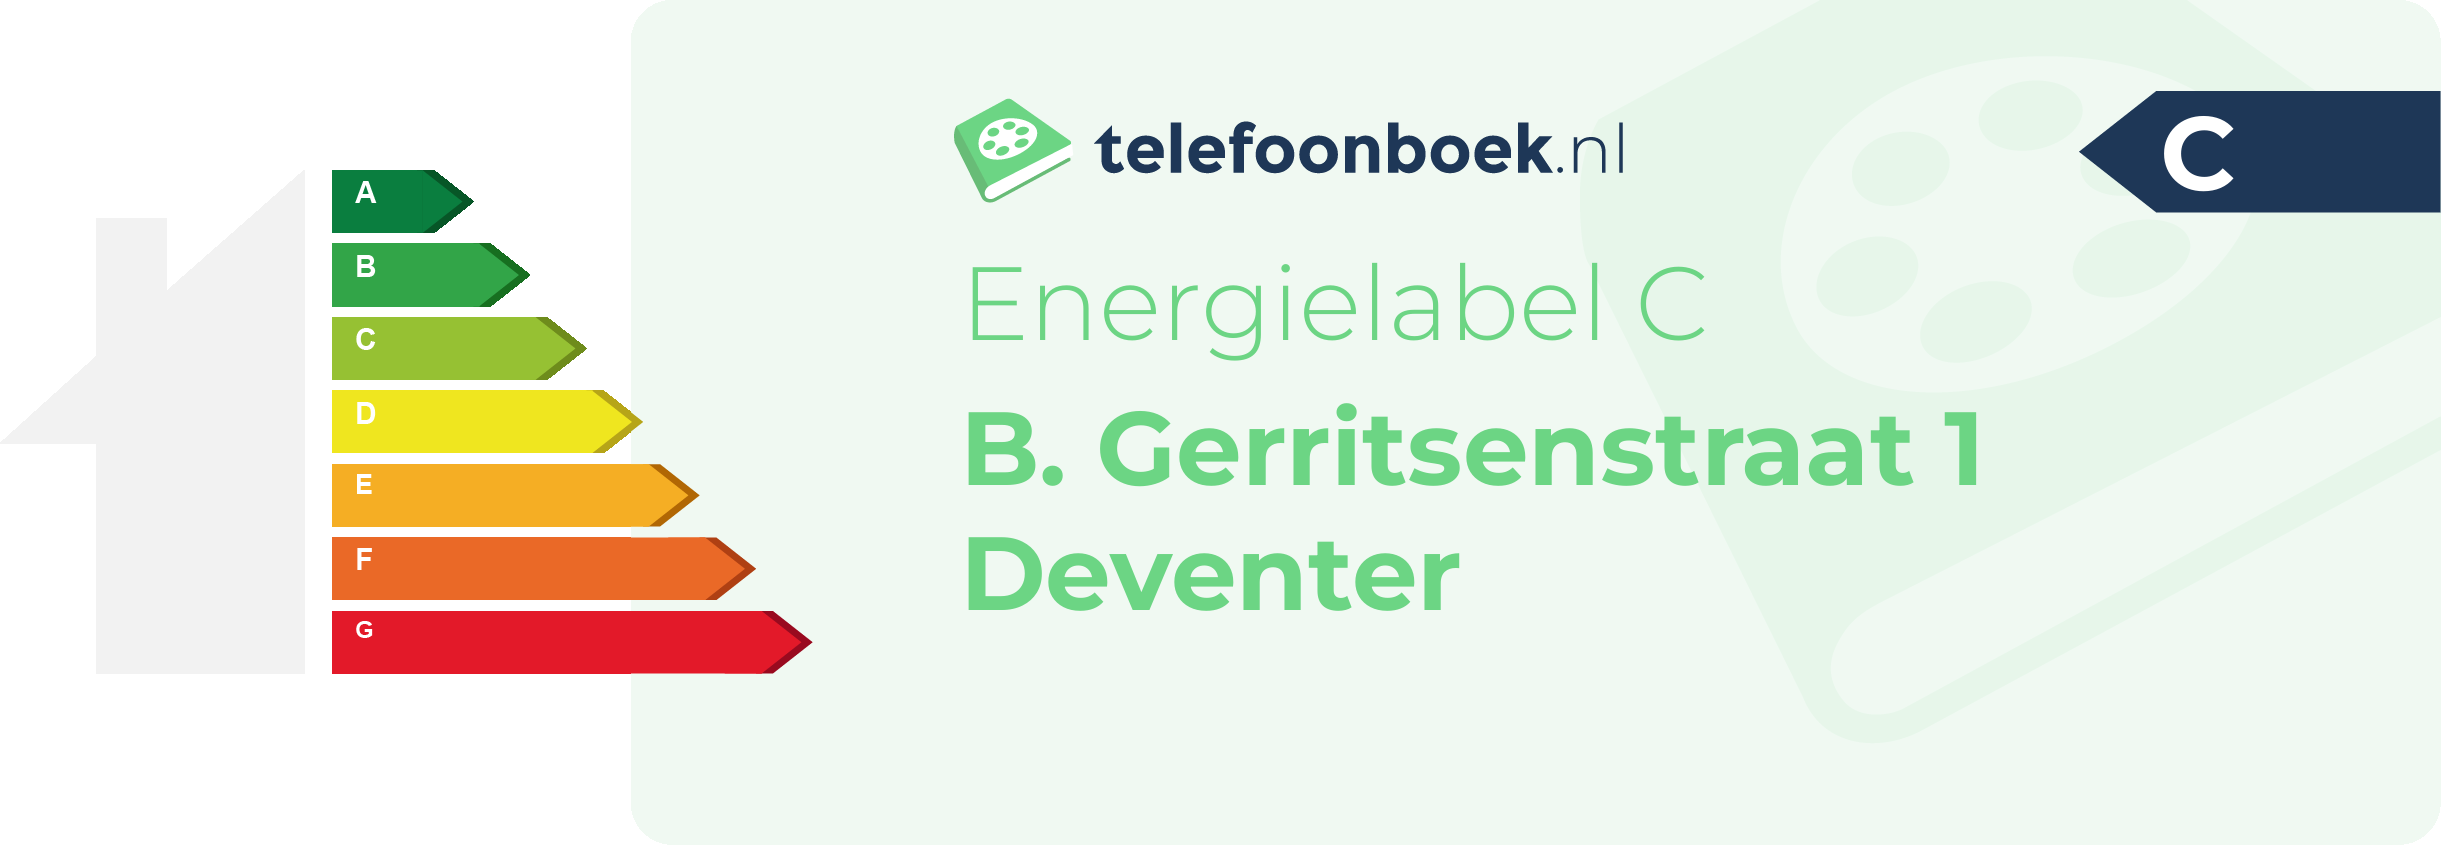 Energielabel B. Gerritsenstraat 1 Deventer